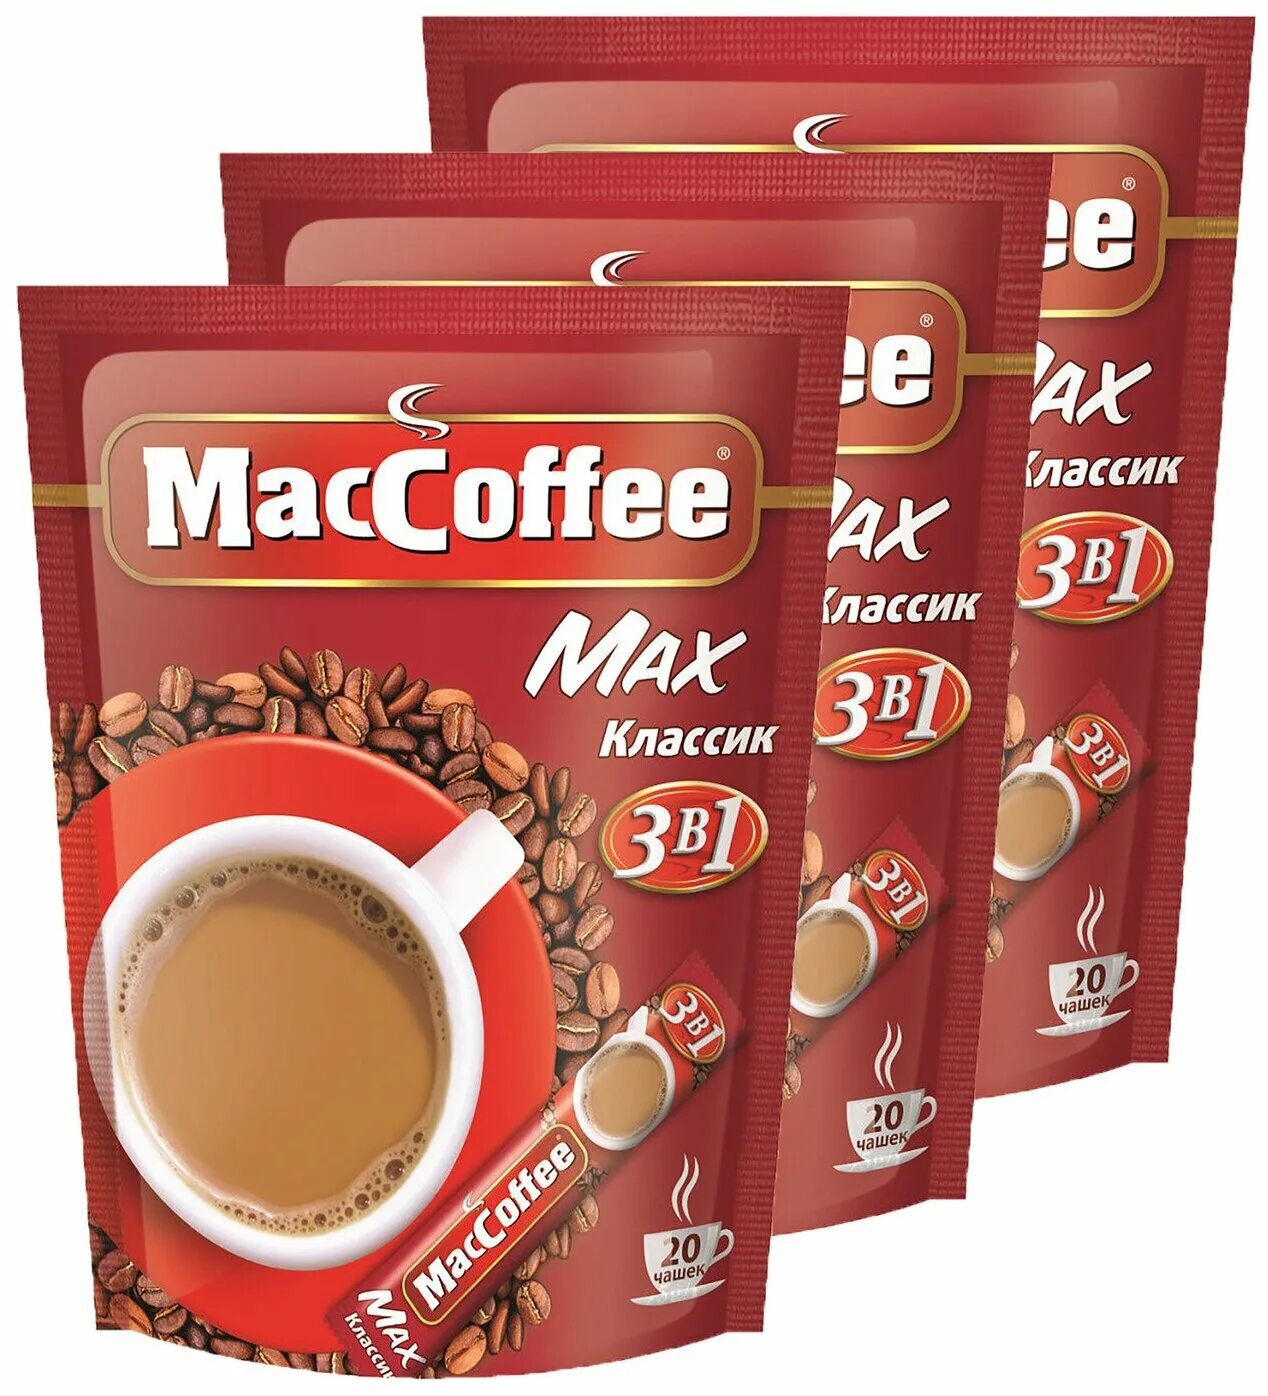 Кофе MACCOFFEE Max Классик 3в1 16 гр. Маккофе Макс Классик (3в1) 20. MACCOFFEE 3 В 1 20шт. MACCOFFEE Max Классик 3 в 1. Маккофе отзывы